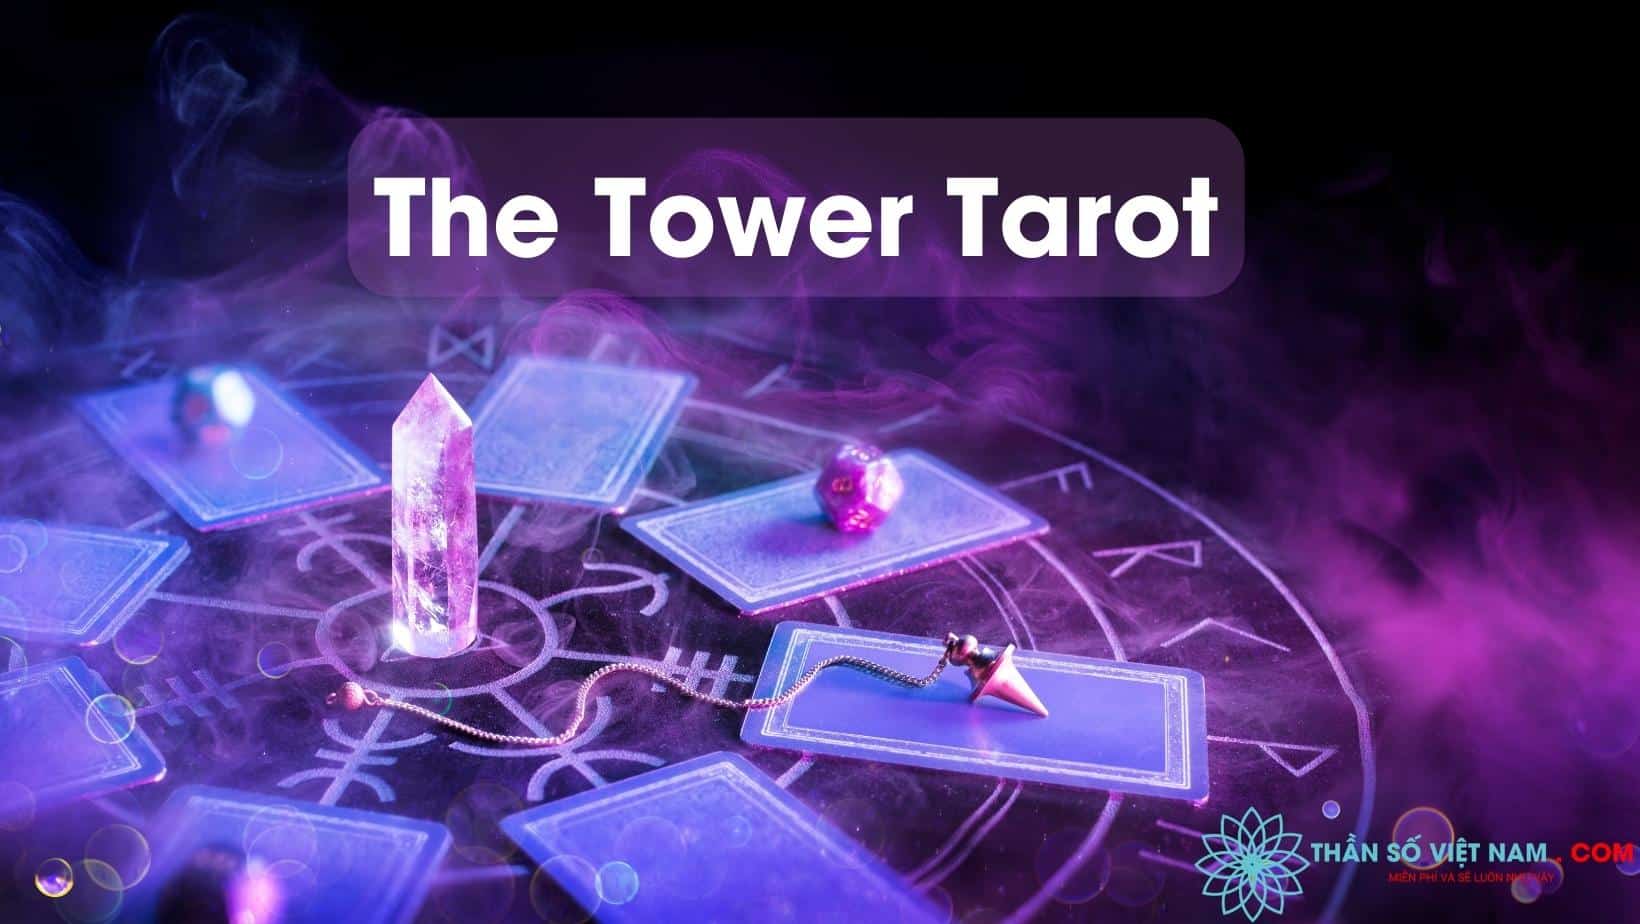 Lá bài Tarot: Lá bài Tarot với những biểu tượng và hình ảnh độc đáo sẽ giúp bạn khám phá ra nhiều bí ẩn và thú vị về tương lai của chính mình. Đón xem những lá bài Tarot được trình bày đầy tinh tế và sắc màu để cùng lắng nghe thông điệp của chúng.